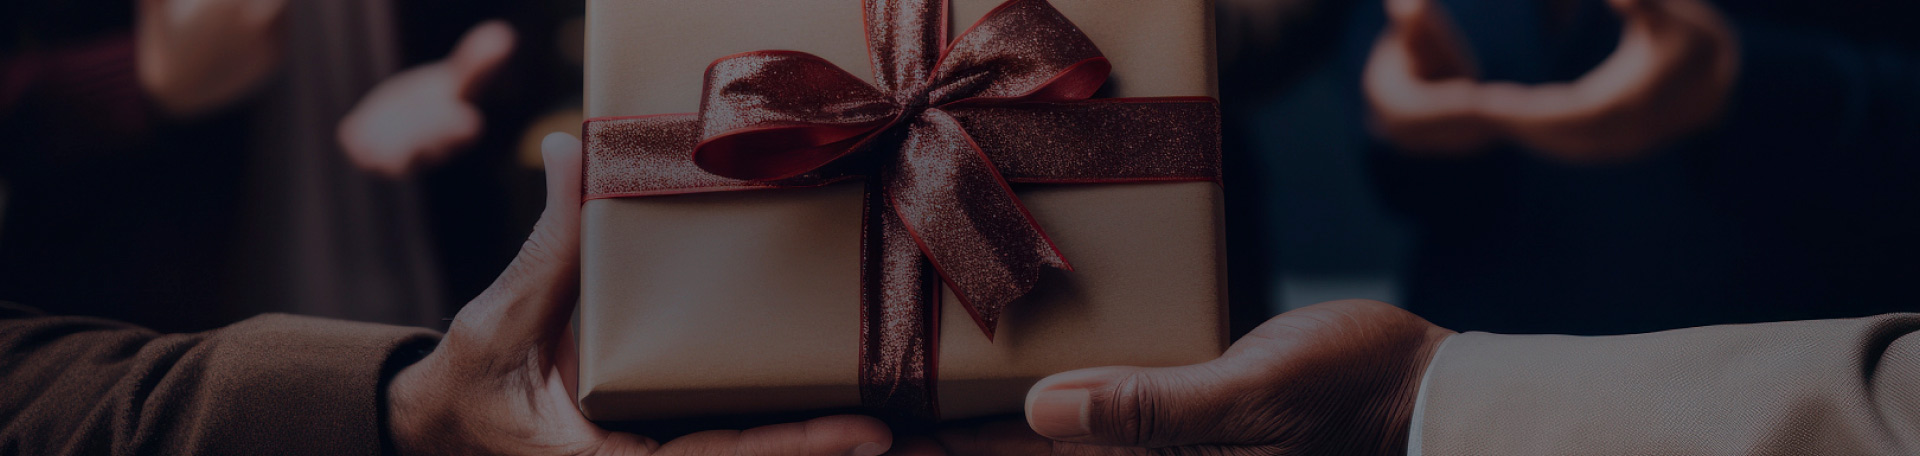 Какие налоговые обязательства возникают при вручении новогодних подарков партнерам?